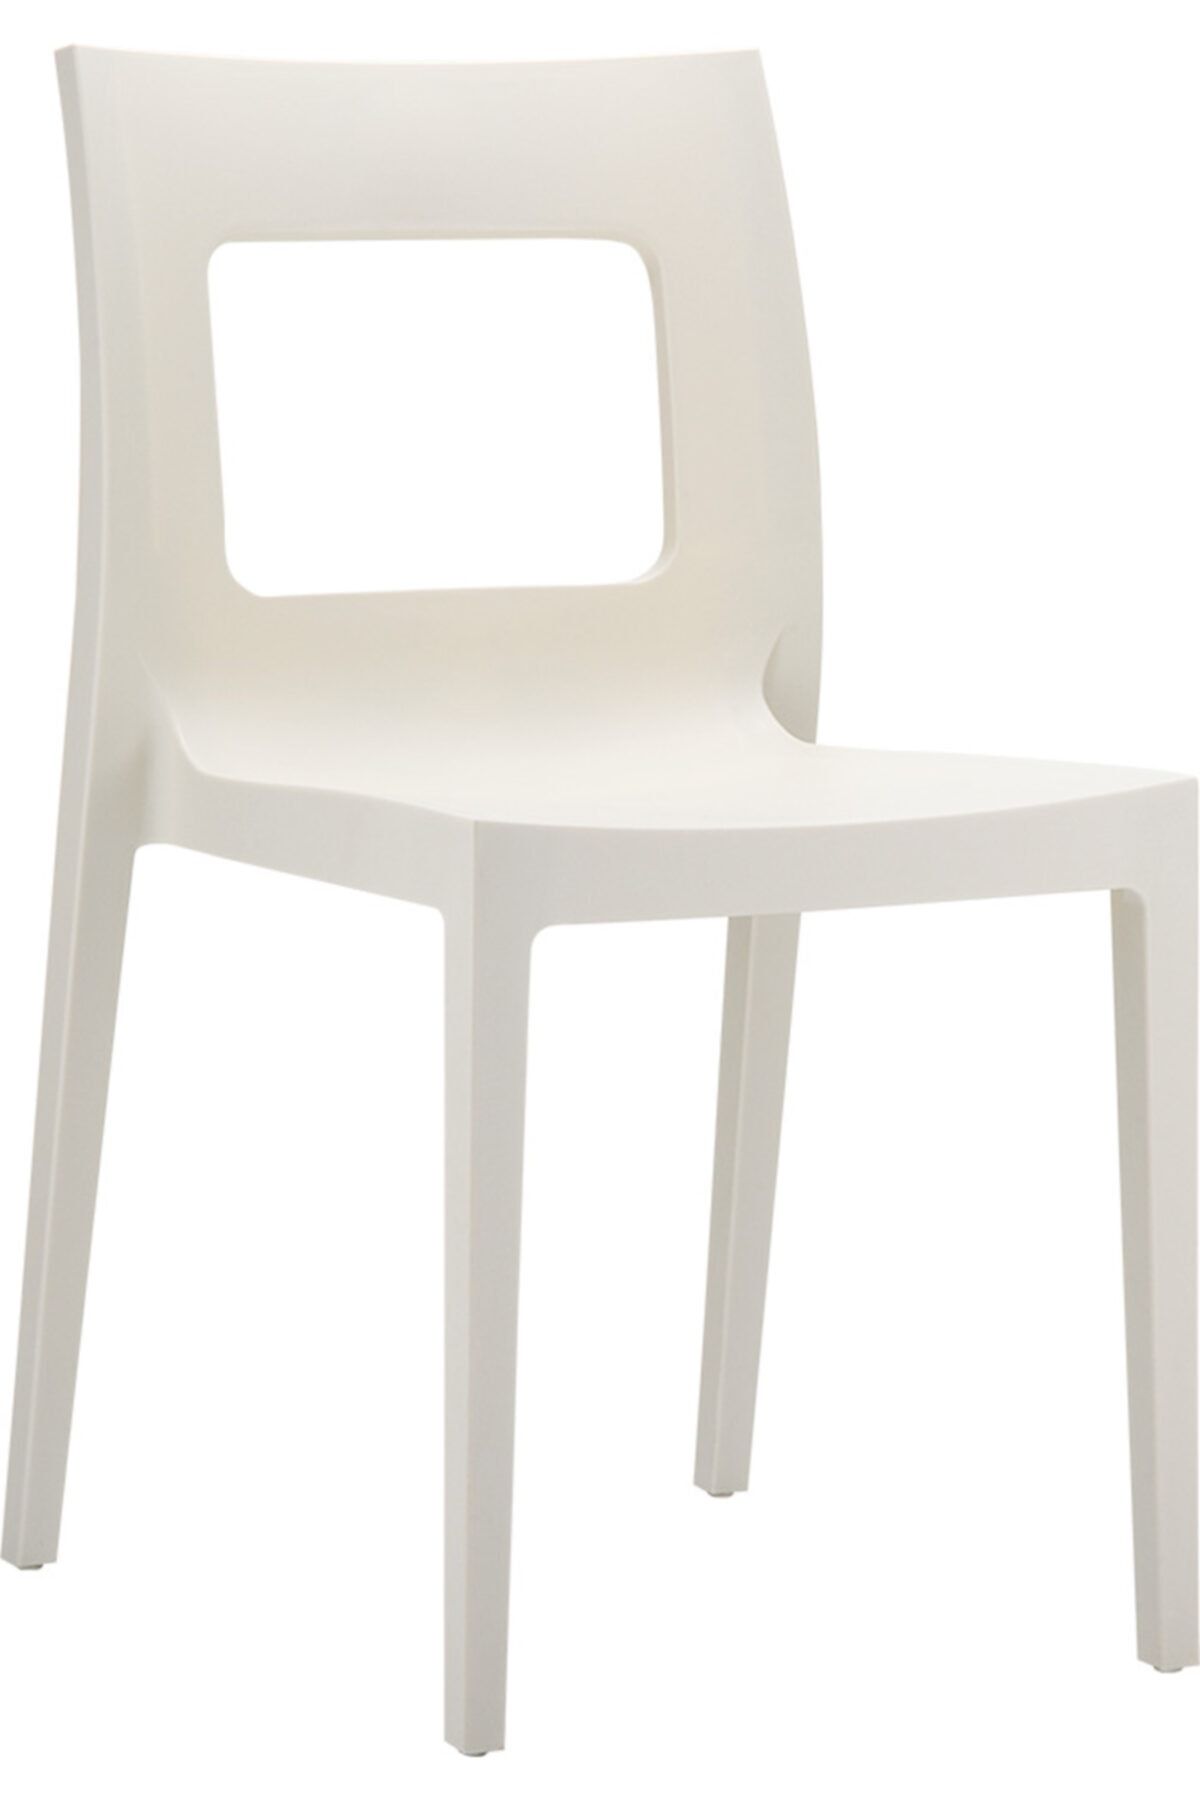 Siesta Lucca Sandalye Beyaz